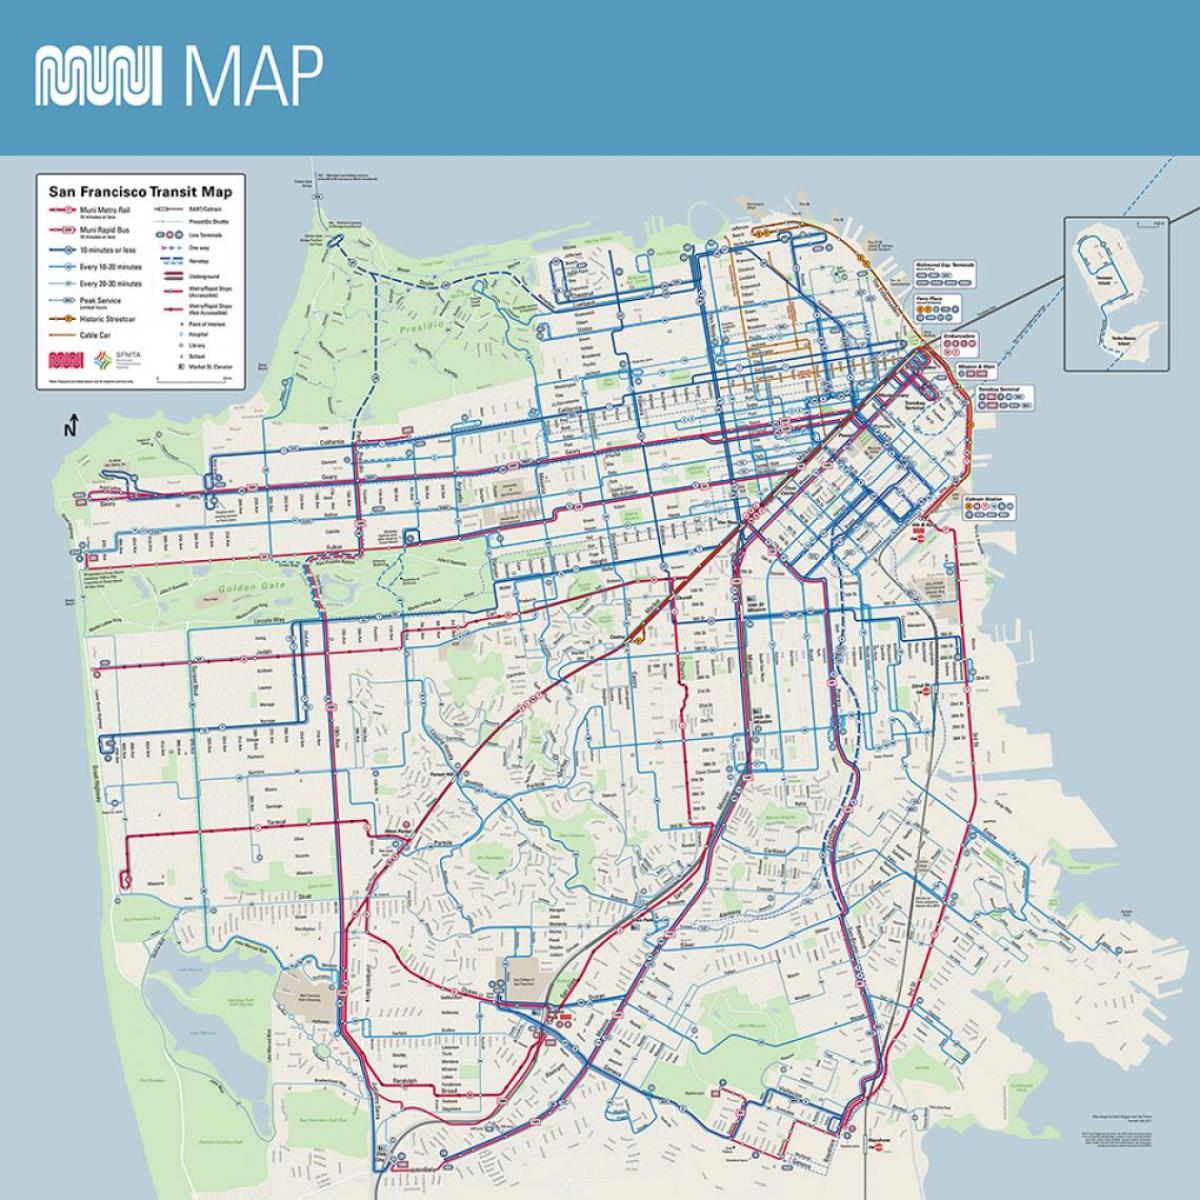 muni zemljevid San Francisco, ca